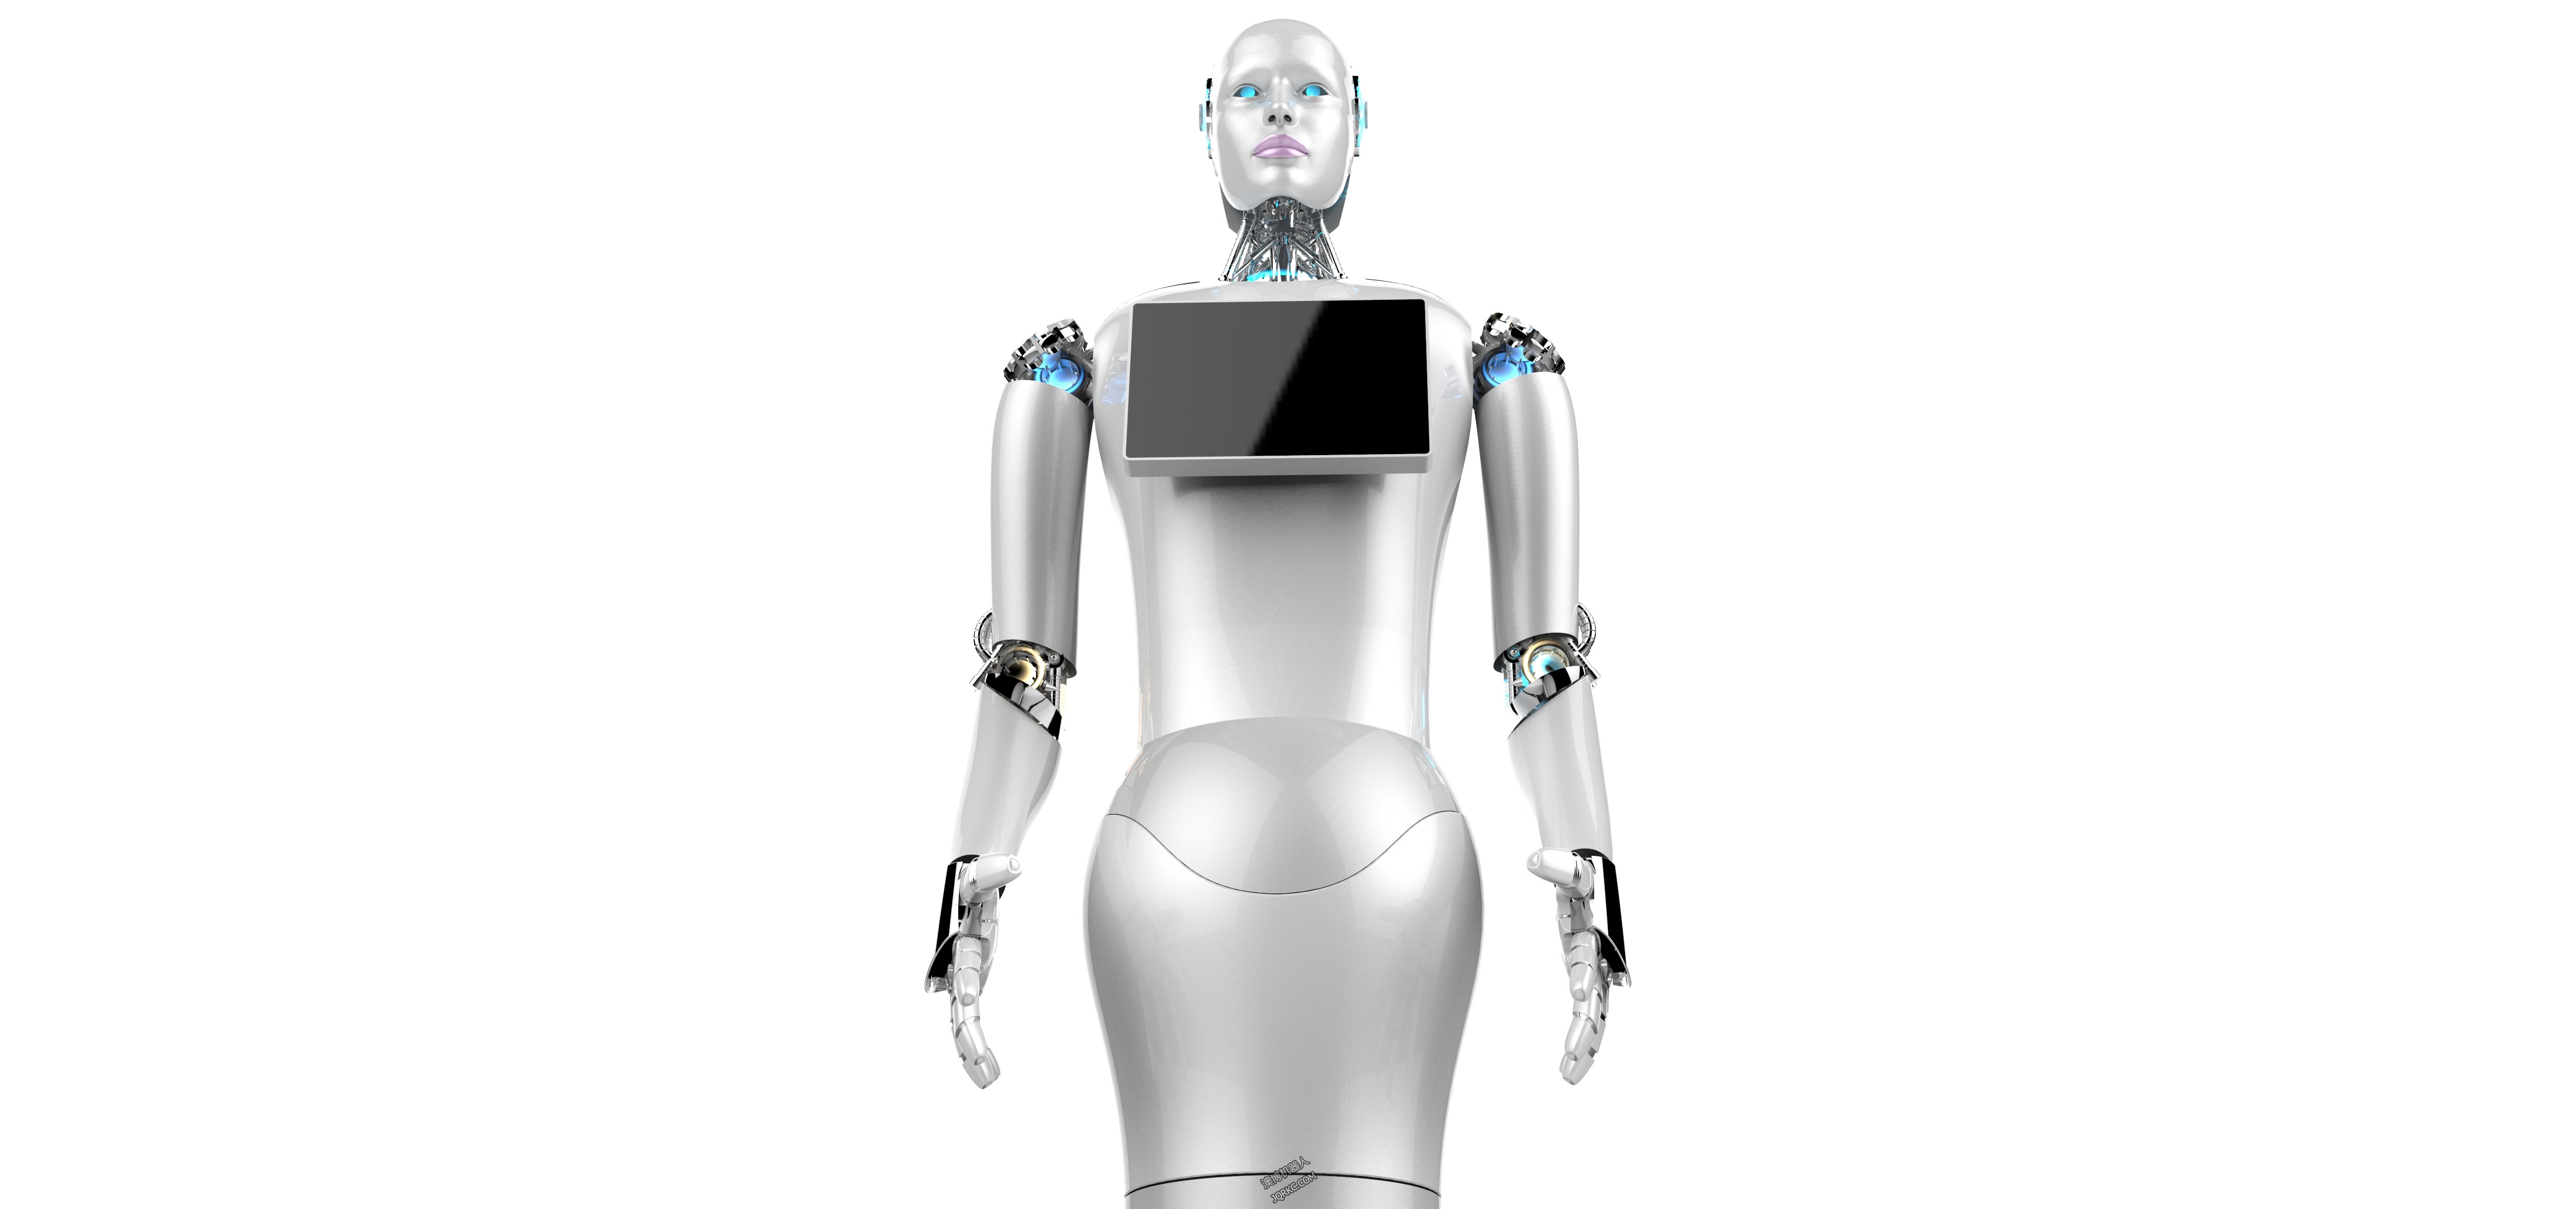 机器人如何影响人类工作